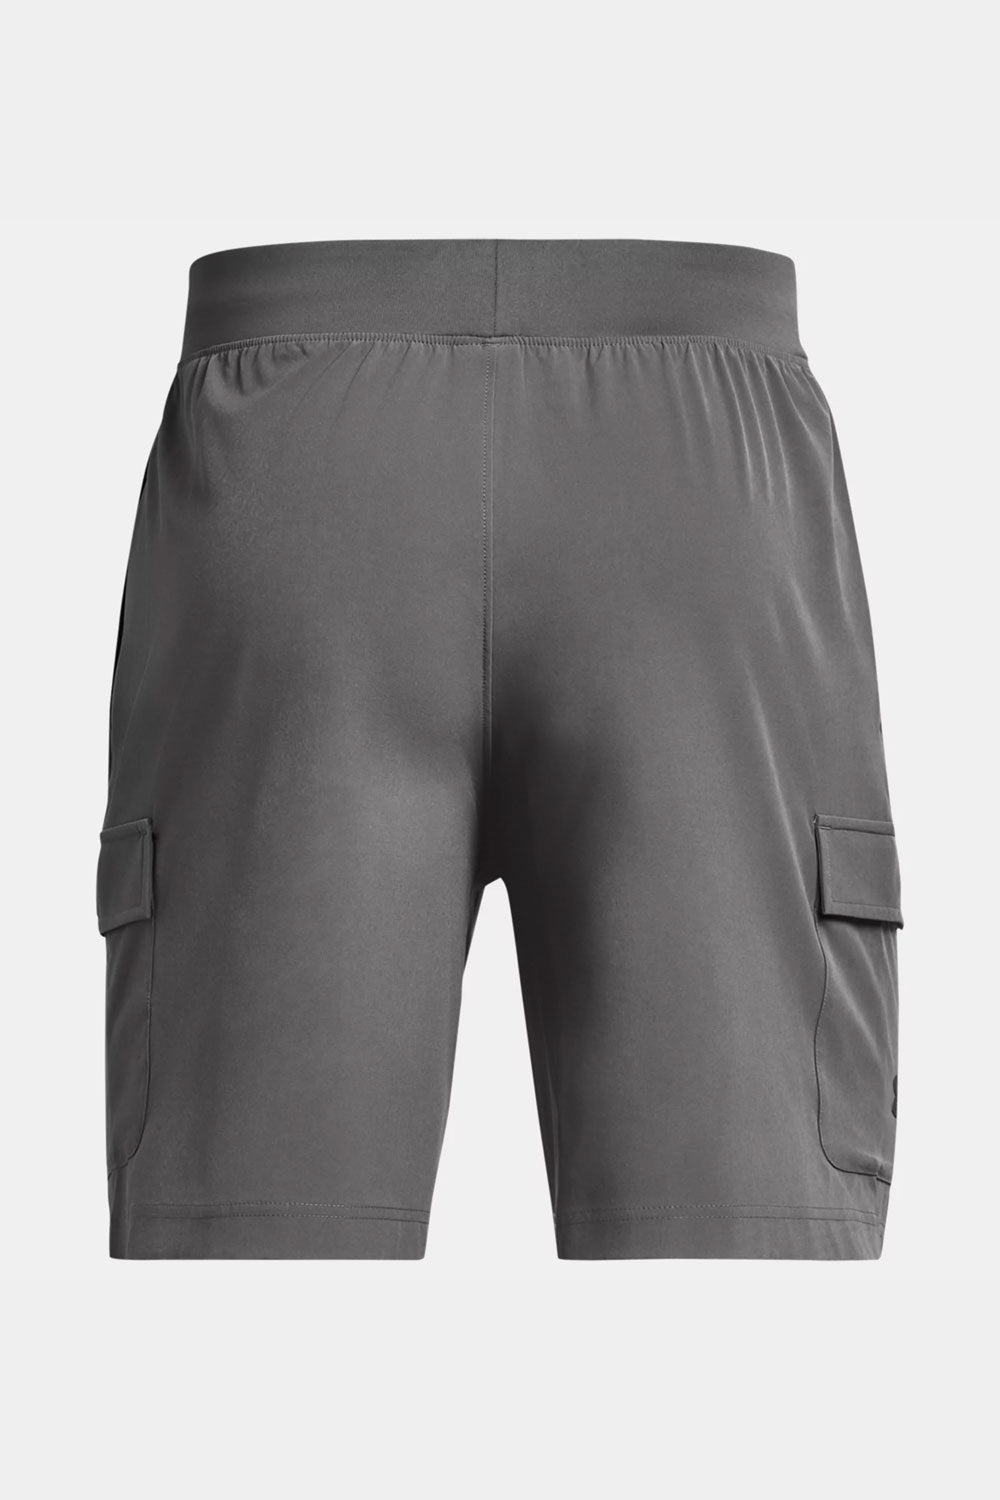 אנדר ארמור מכנסי דגמ"ח קצרים בצבע אפור לגברים